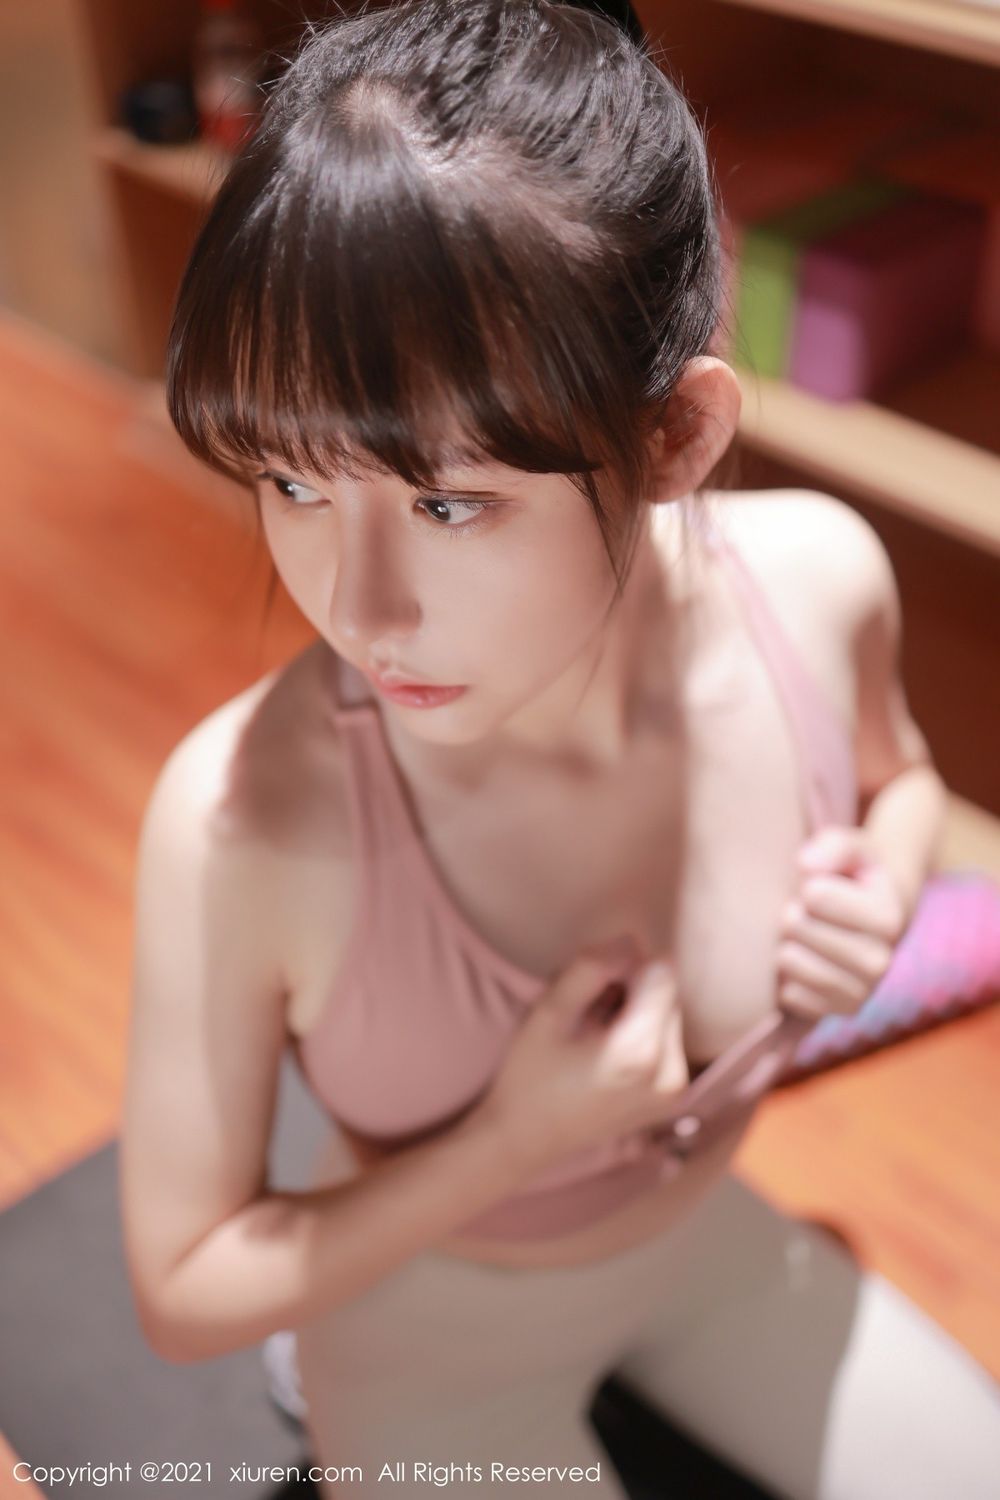 新人模特韩希蕾健身房紧身裤运动内衣服饰性感写真